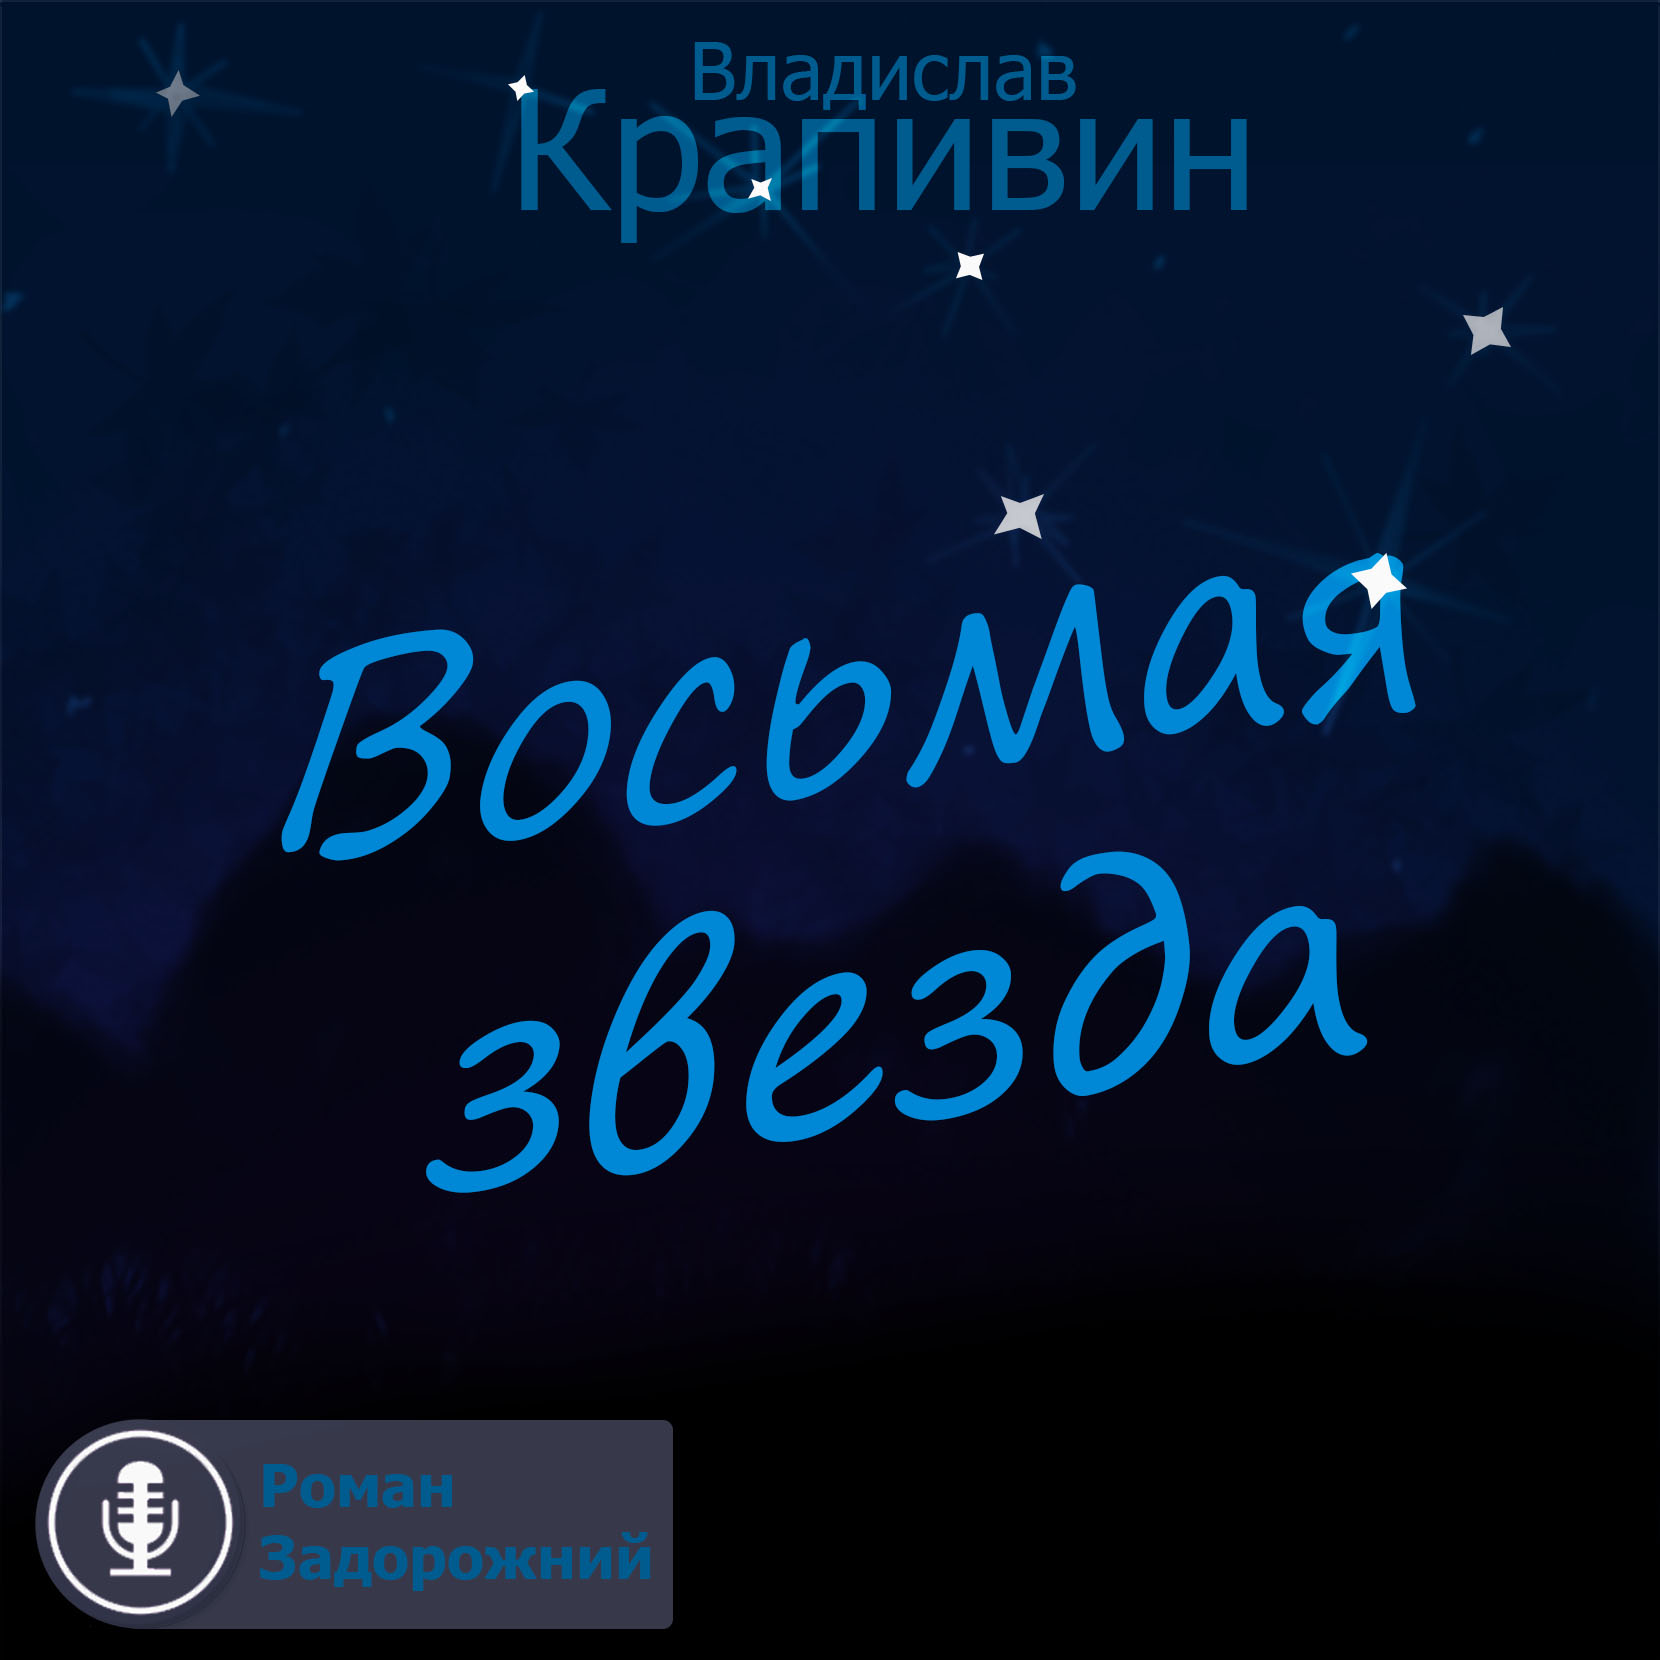 Скачать Восьмая звезда - Владислав Крапивин